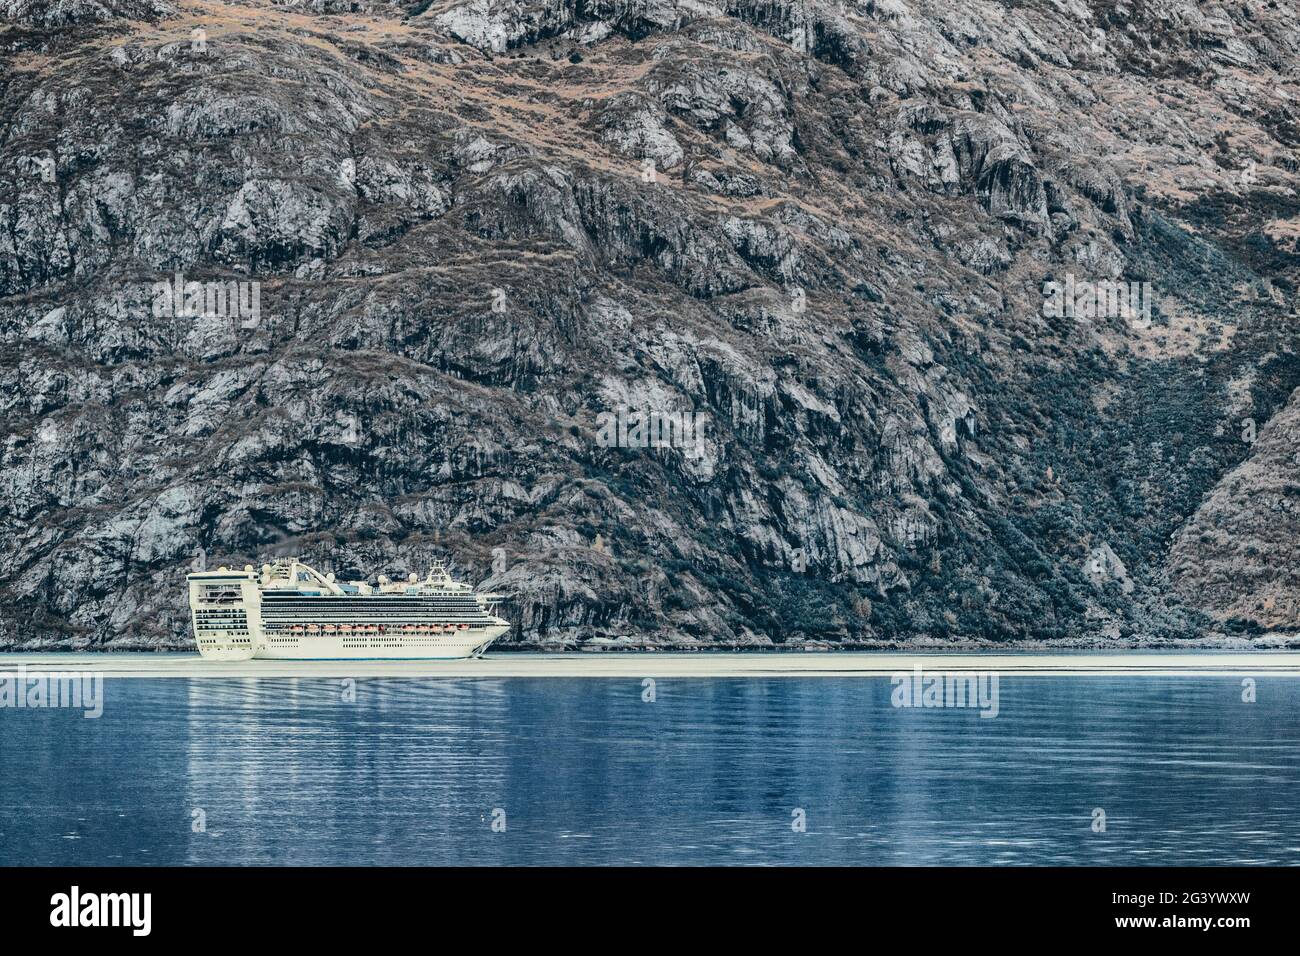 Bateau de croisière naviguant à Glacier Bay, Alaska, sur les eaux marines bleues de l'arctique et les icebergs. Voyage arrière-plan destination de vacances de luxe. Banque D'Images